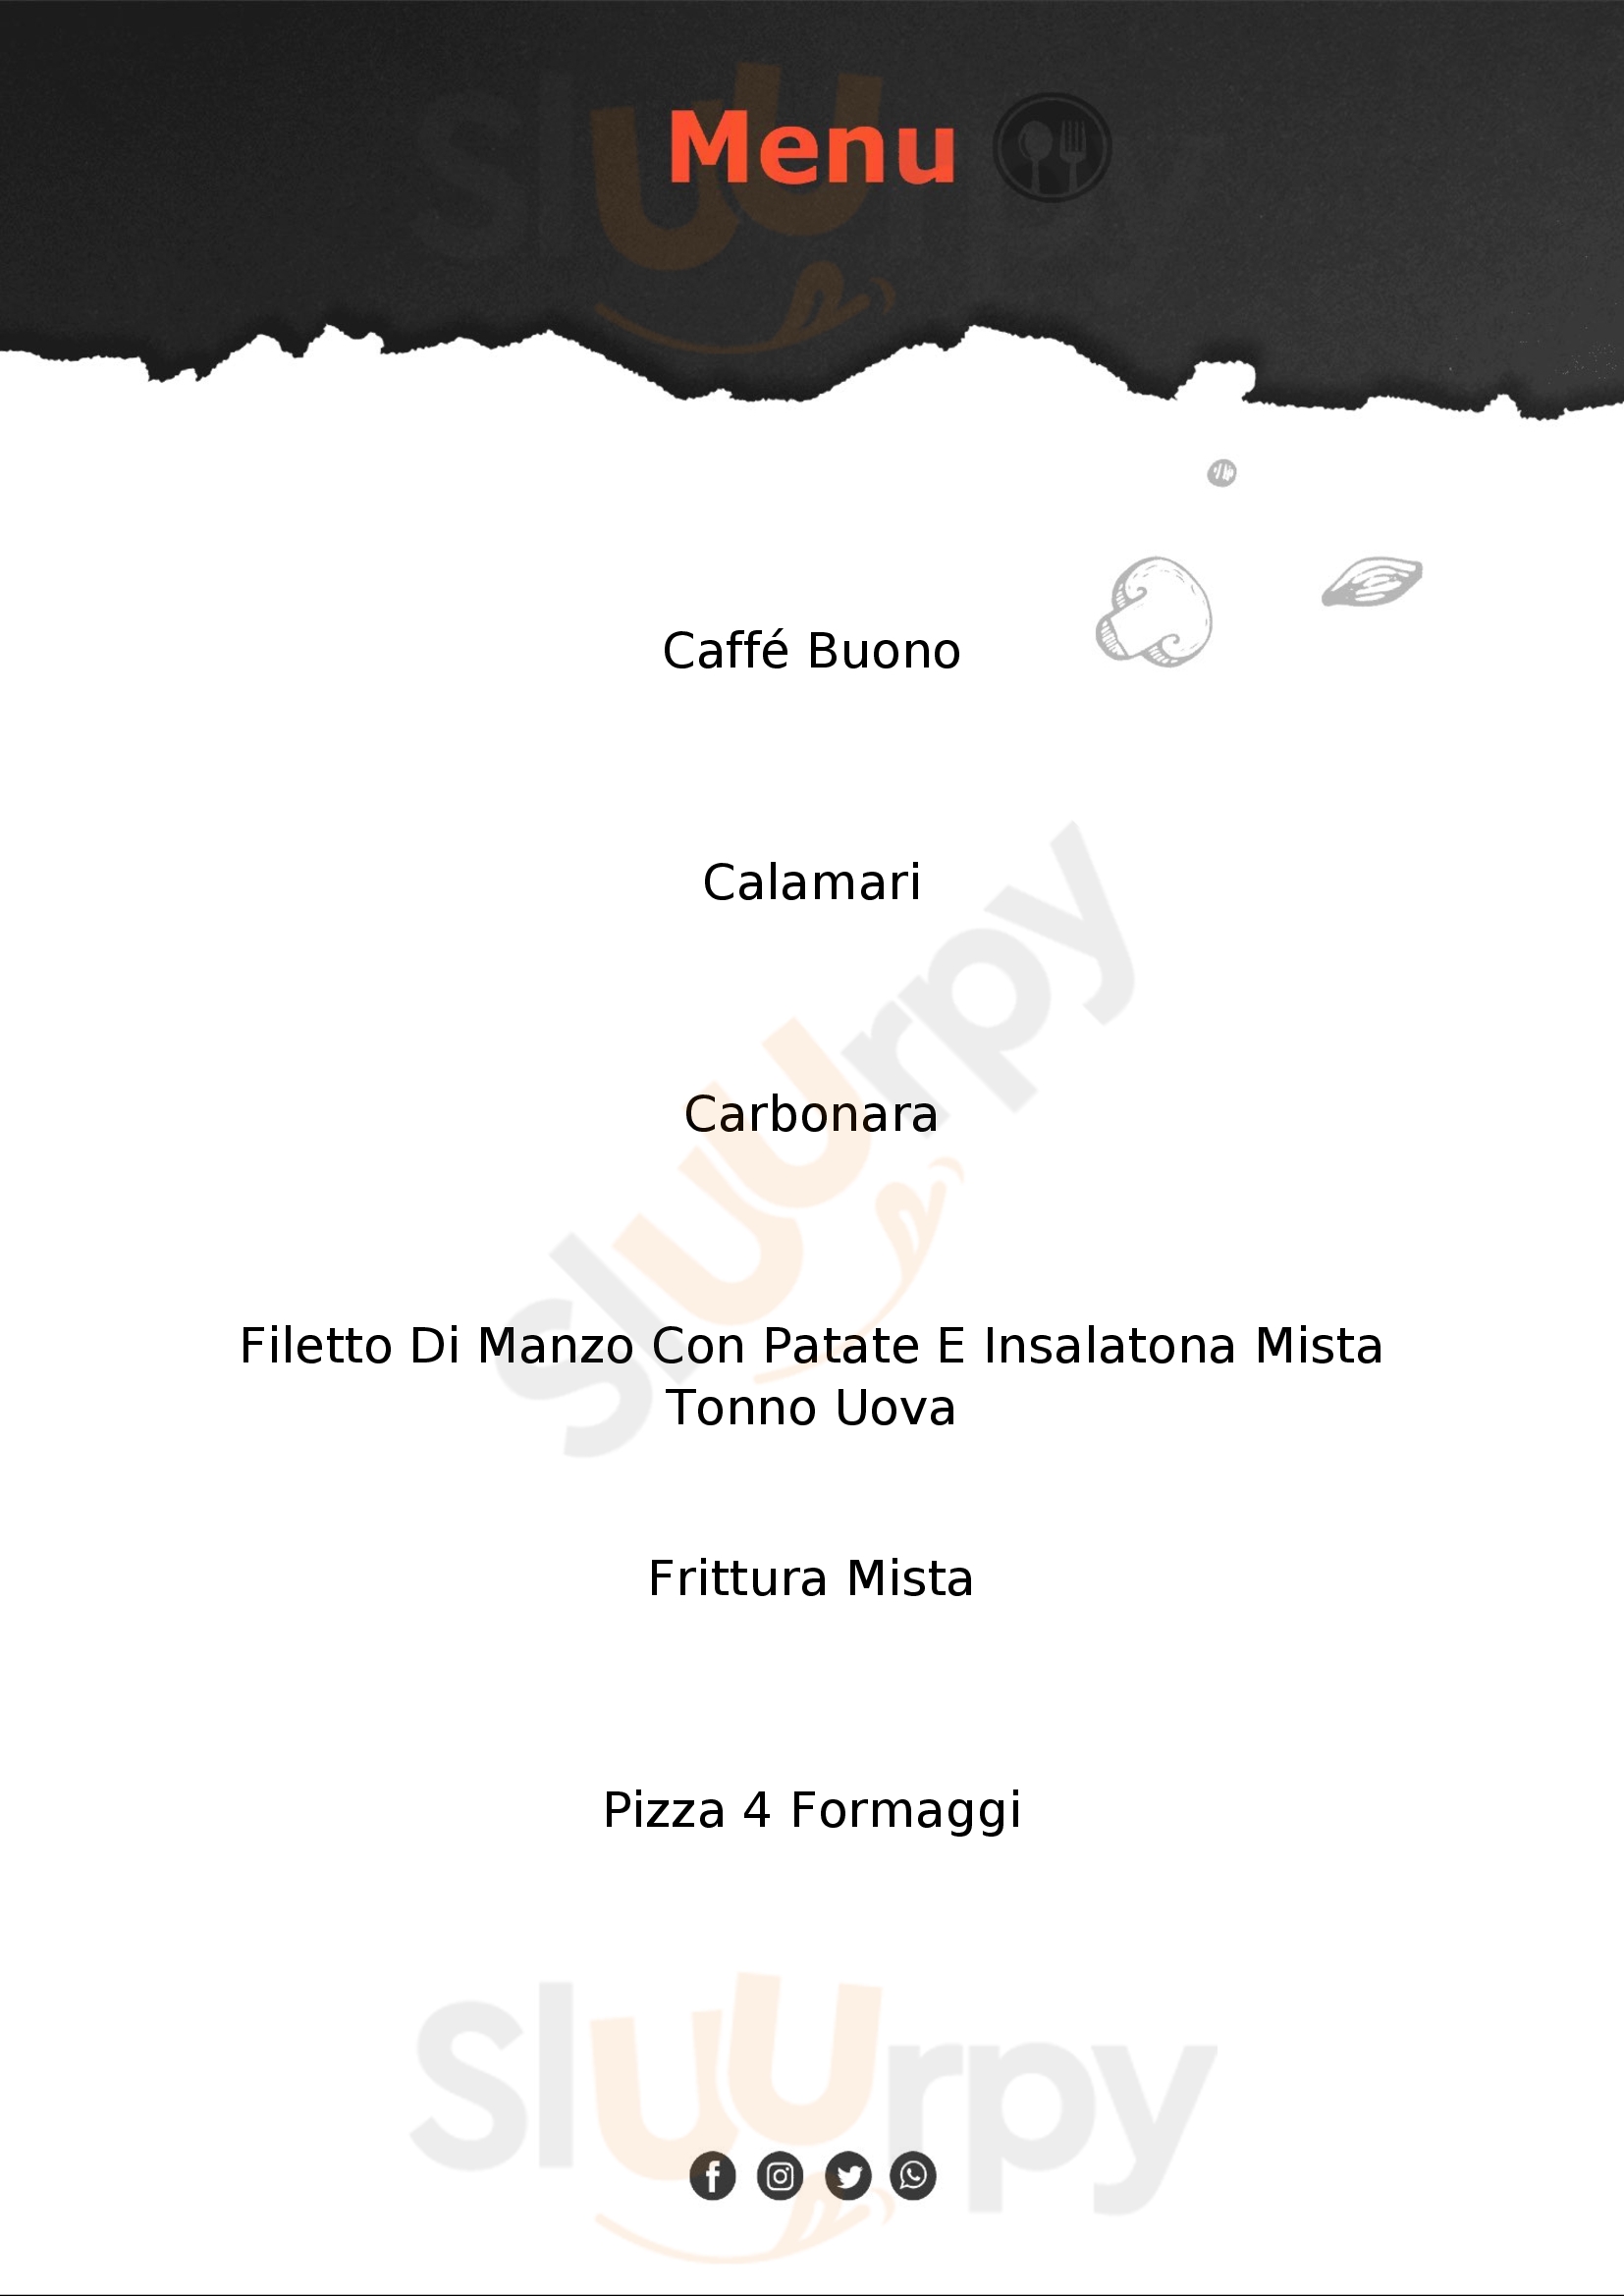 Ristorante Pizzeria Mauro Cavallino-Treporti menù 1 pagina